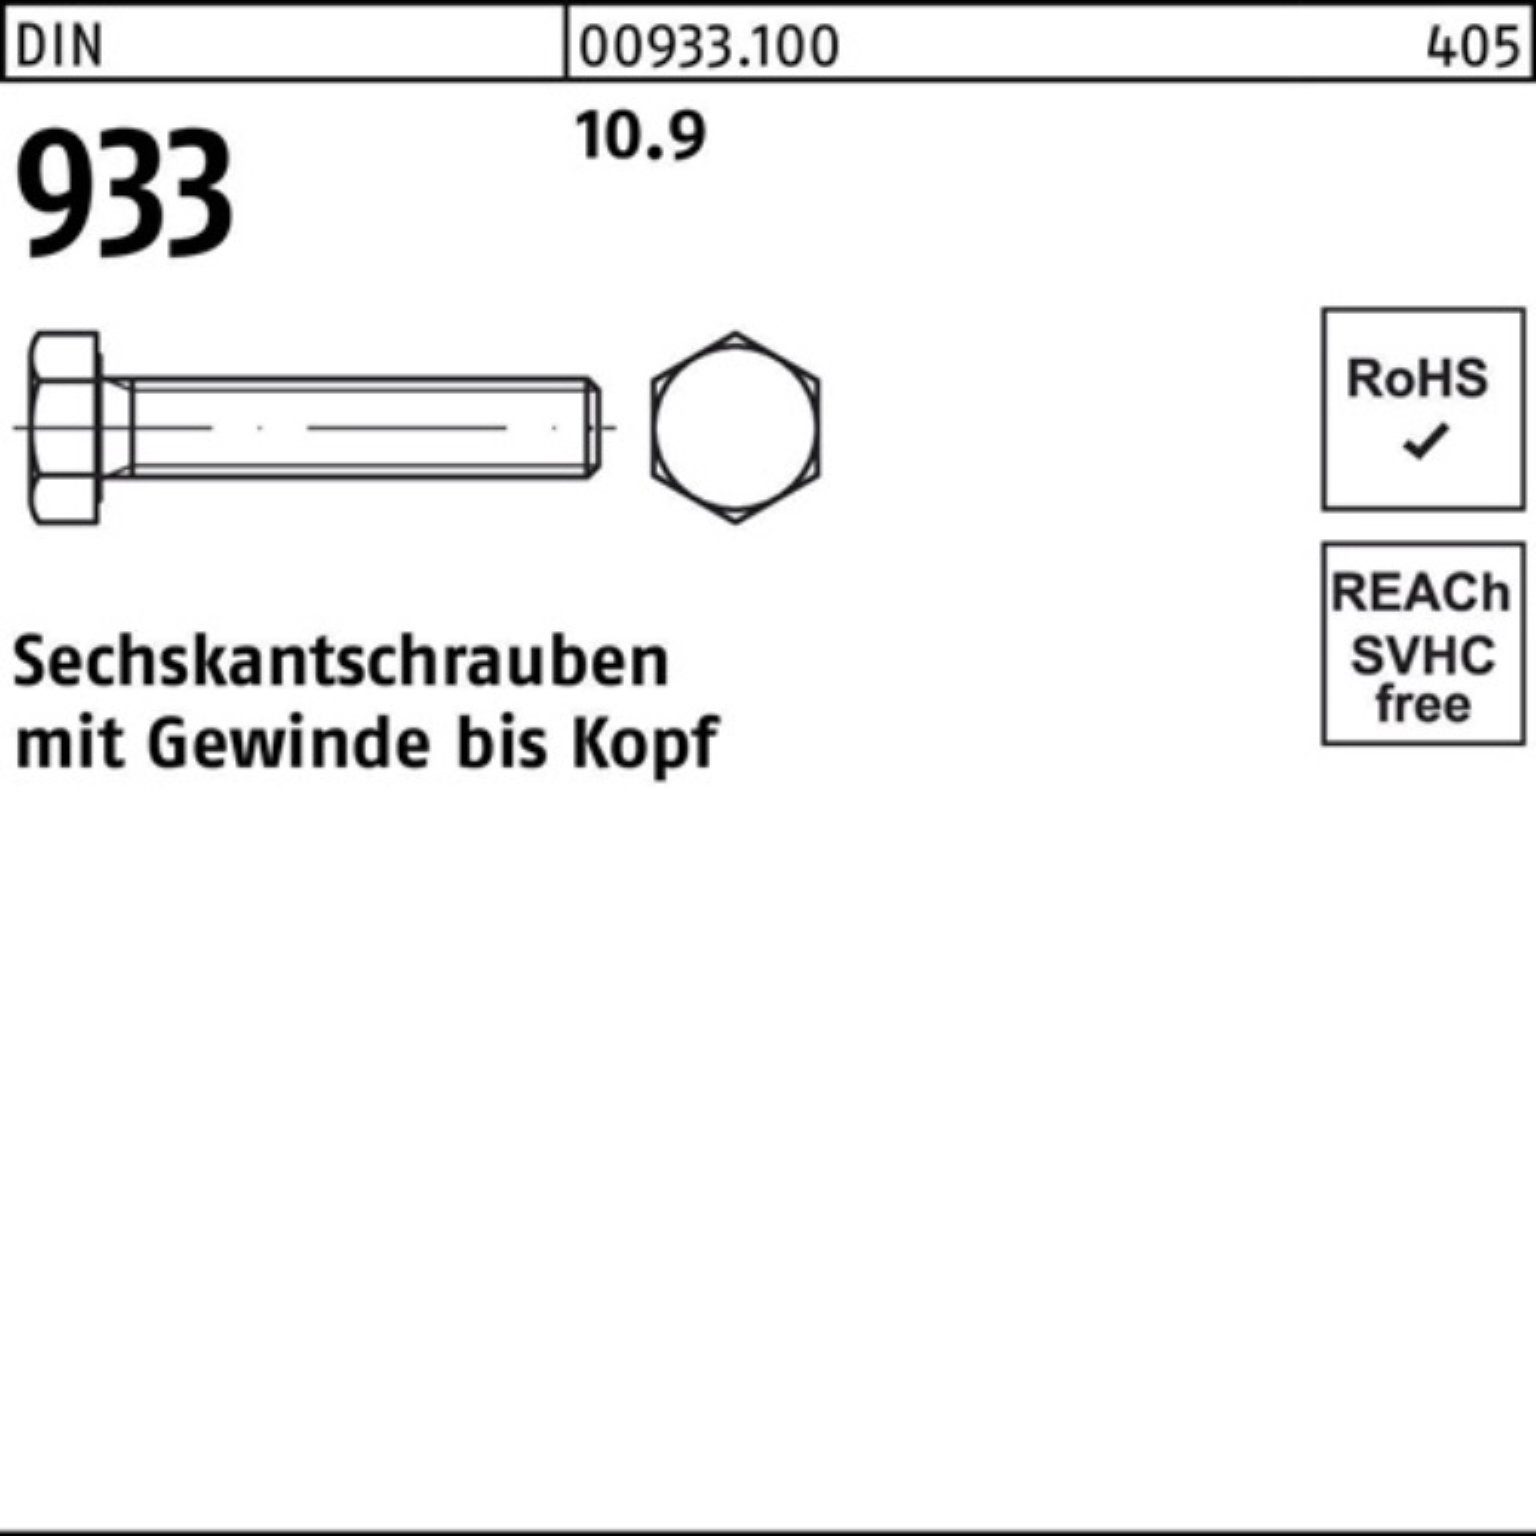 Reyher Sechskantschraube 100er Pack 10.9 93 DIN Sechskantschraube VG 933 25 130 DIN Stück M16x